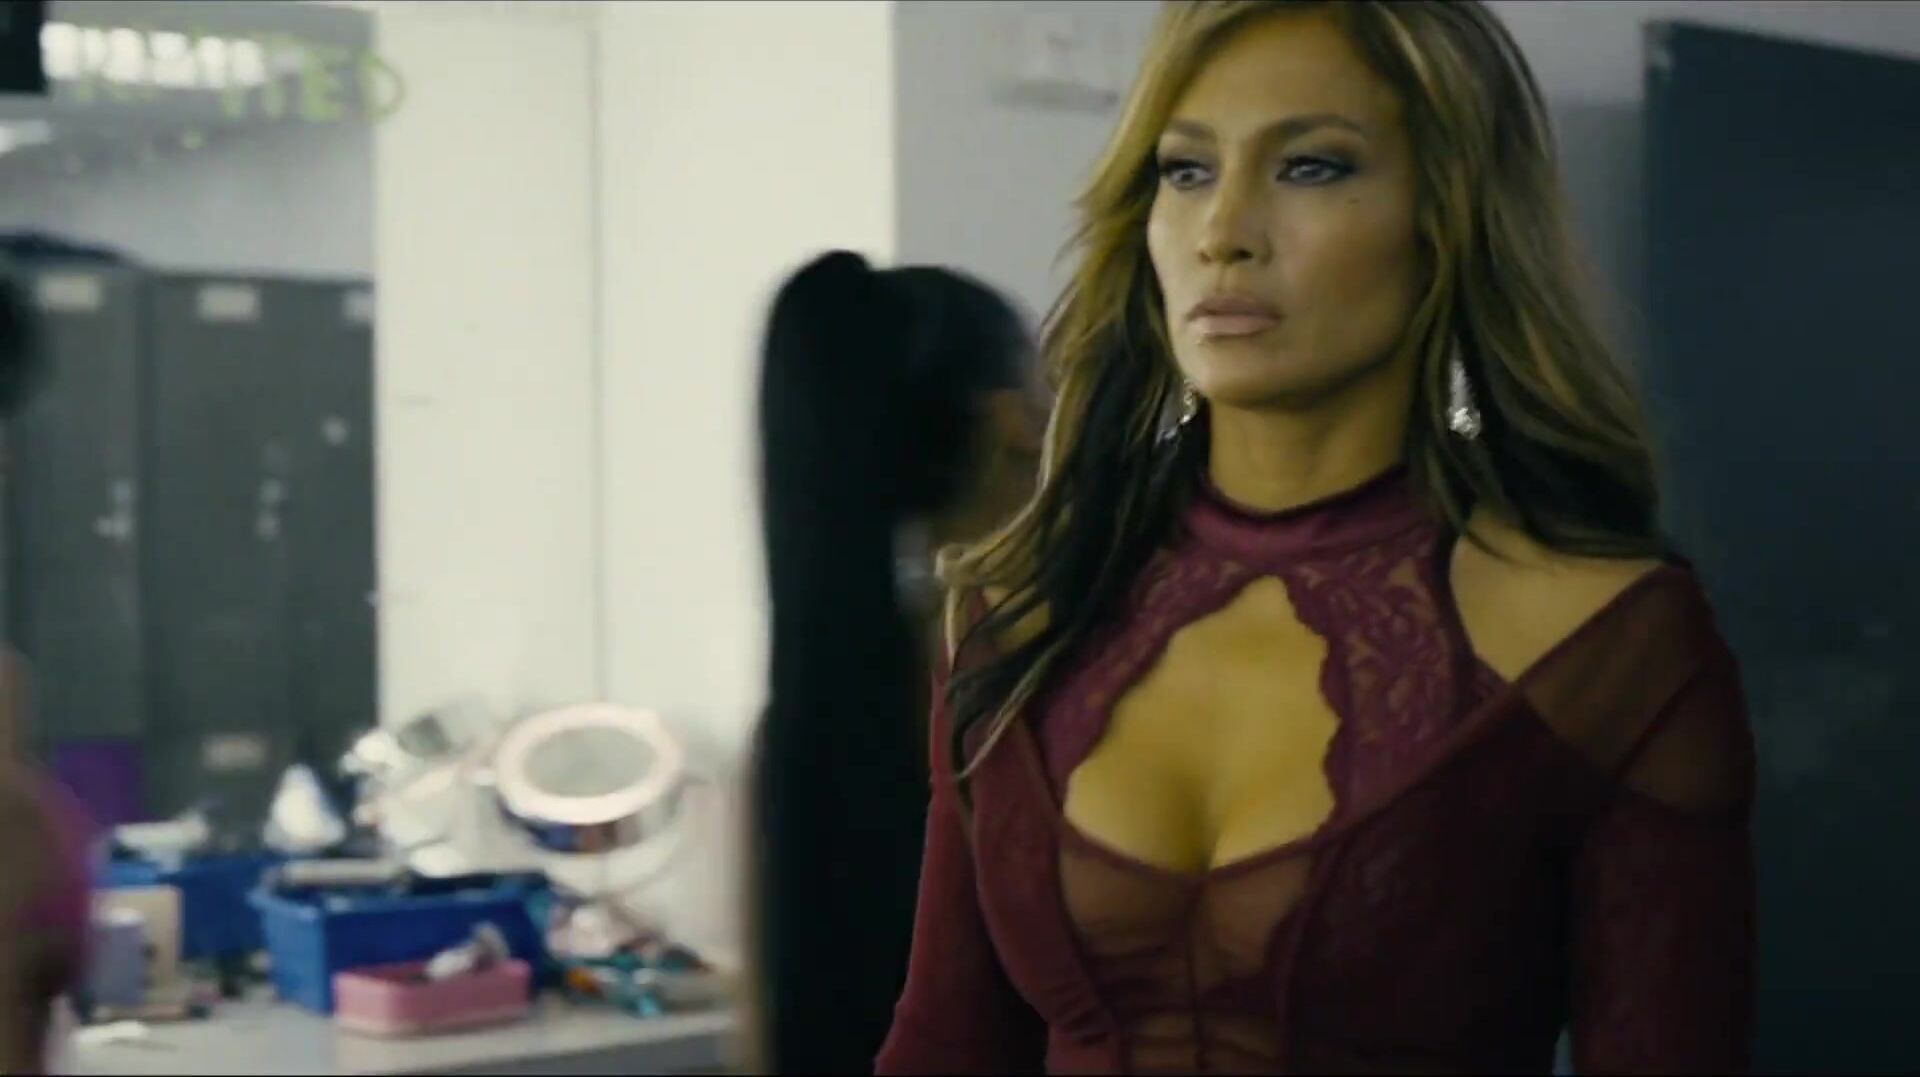 Tempting Latina singer Jennifer Lopez in obscene erotic